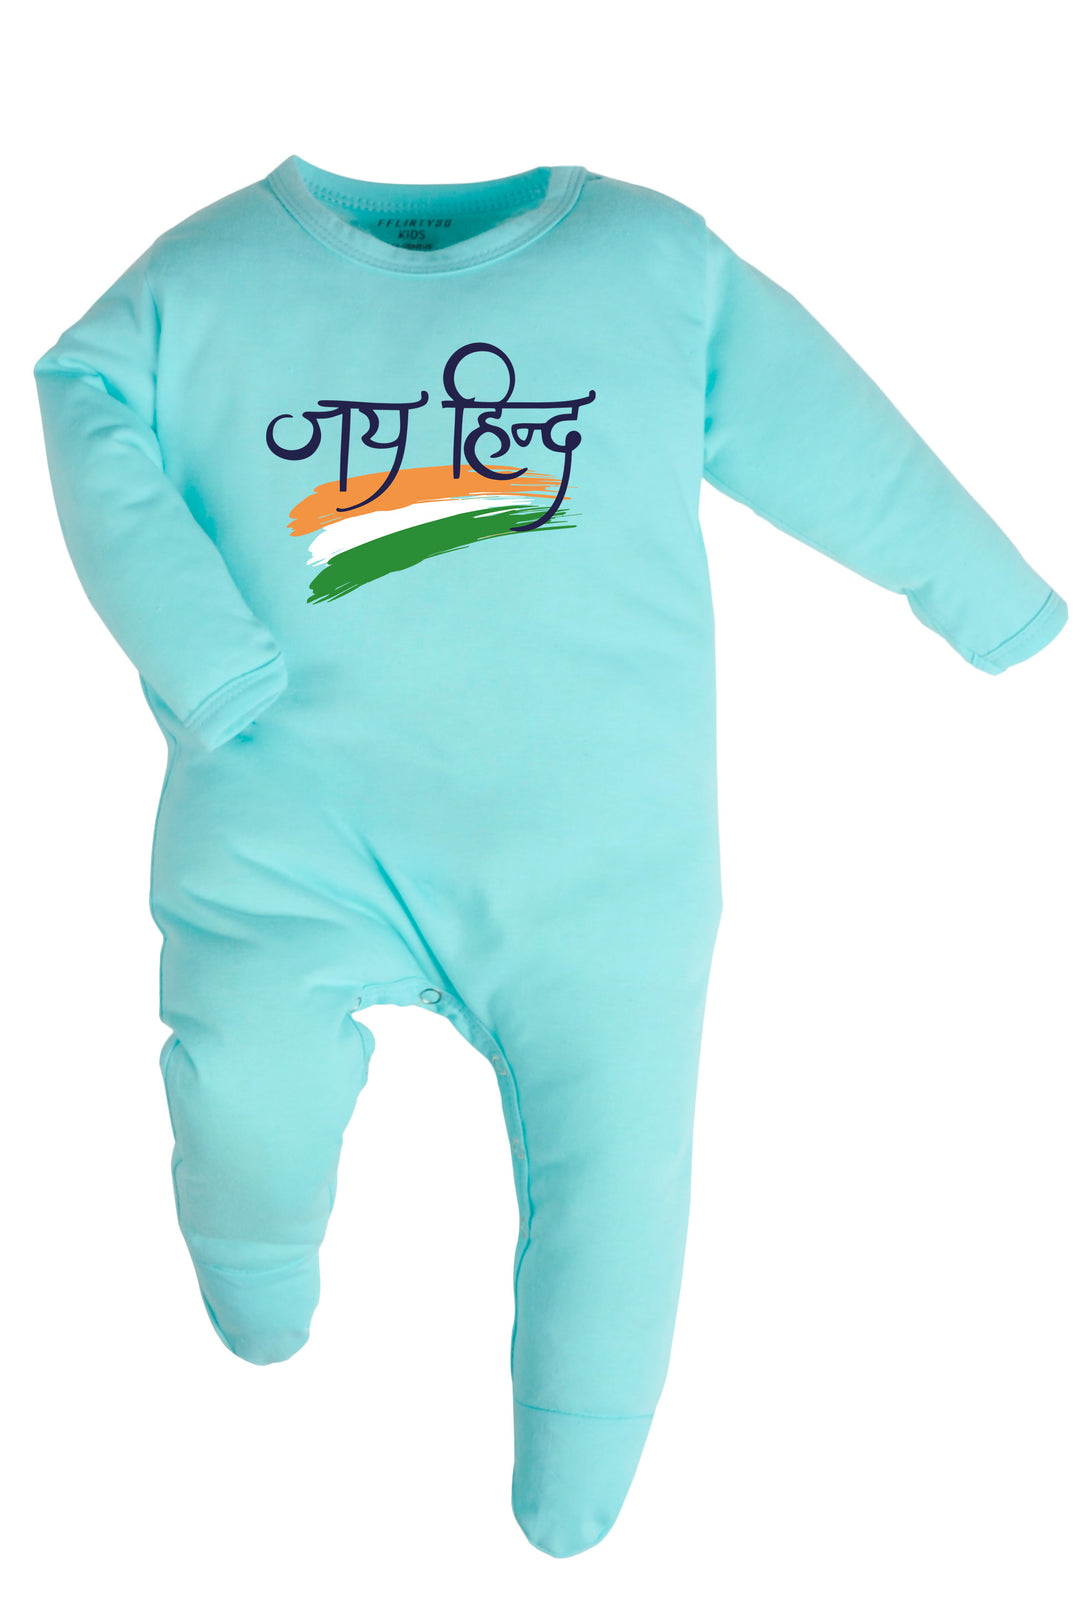 Jai Hind (Hindi) Baby Romper | Onesies